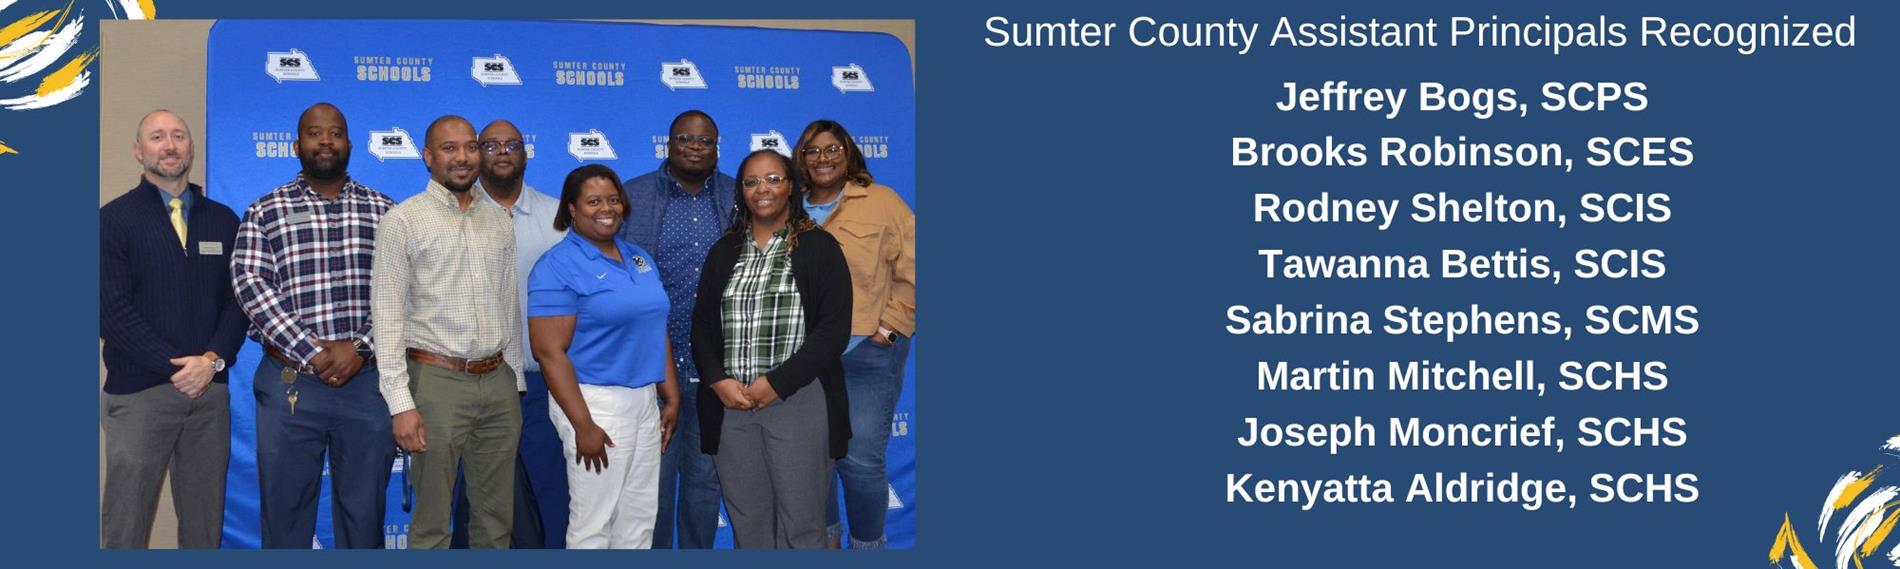 Sumter County Schools Assistant Principals